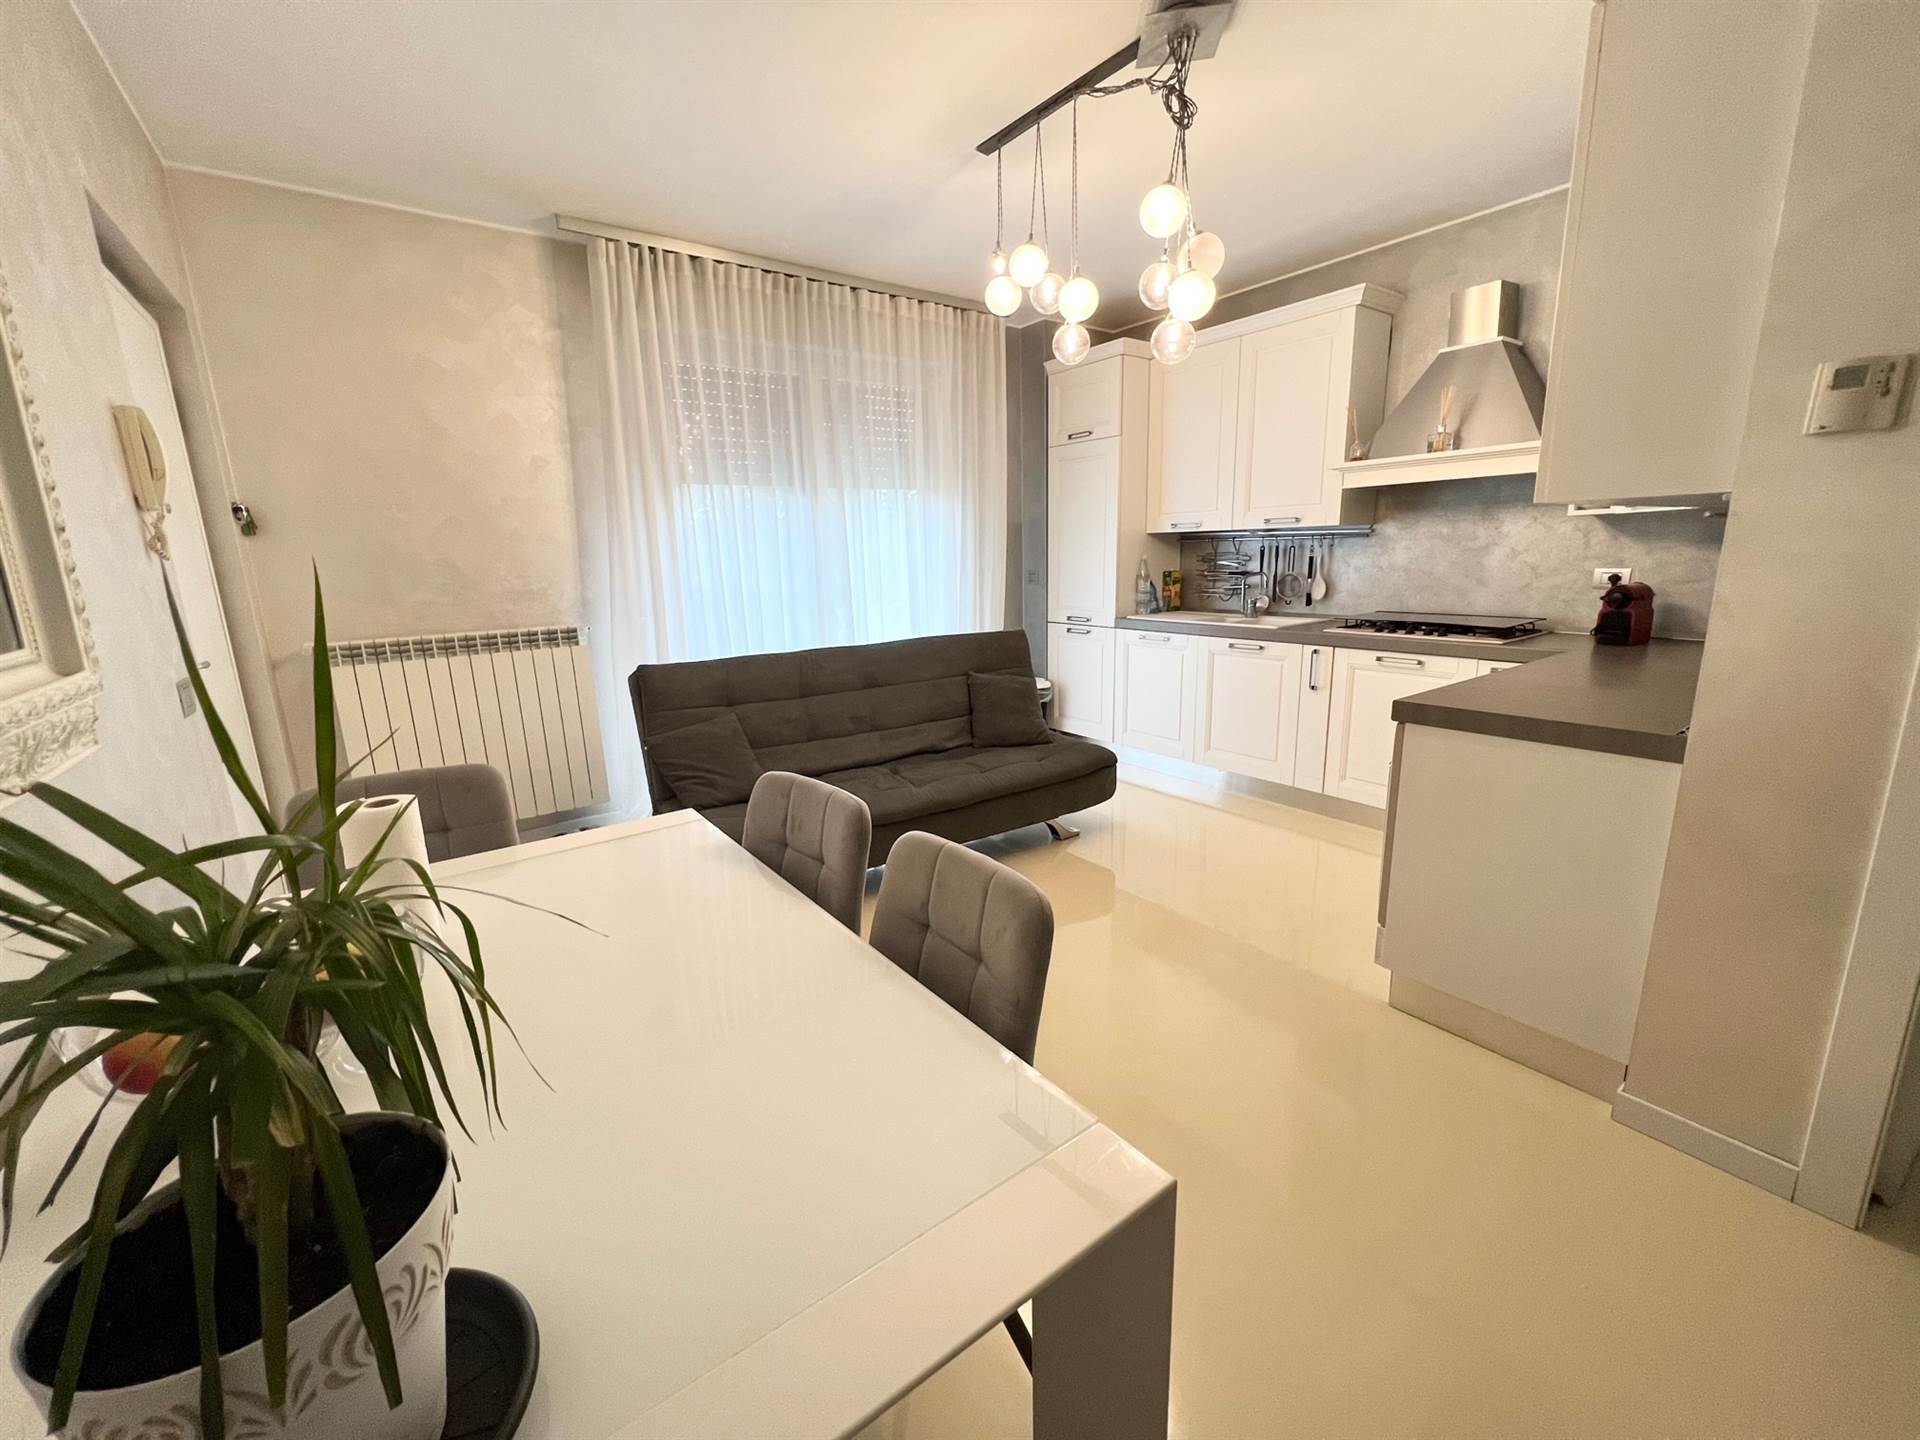 Appartamento in vendita a Romano di Lombardia, 3 locali, prezzo € 170.000 | PortaleAgenzieImmobiliari.it